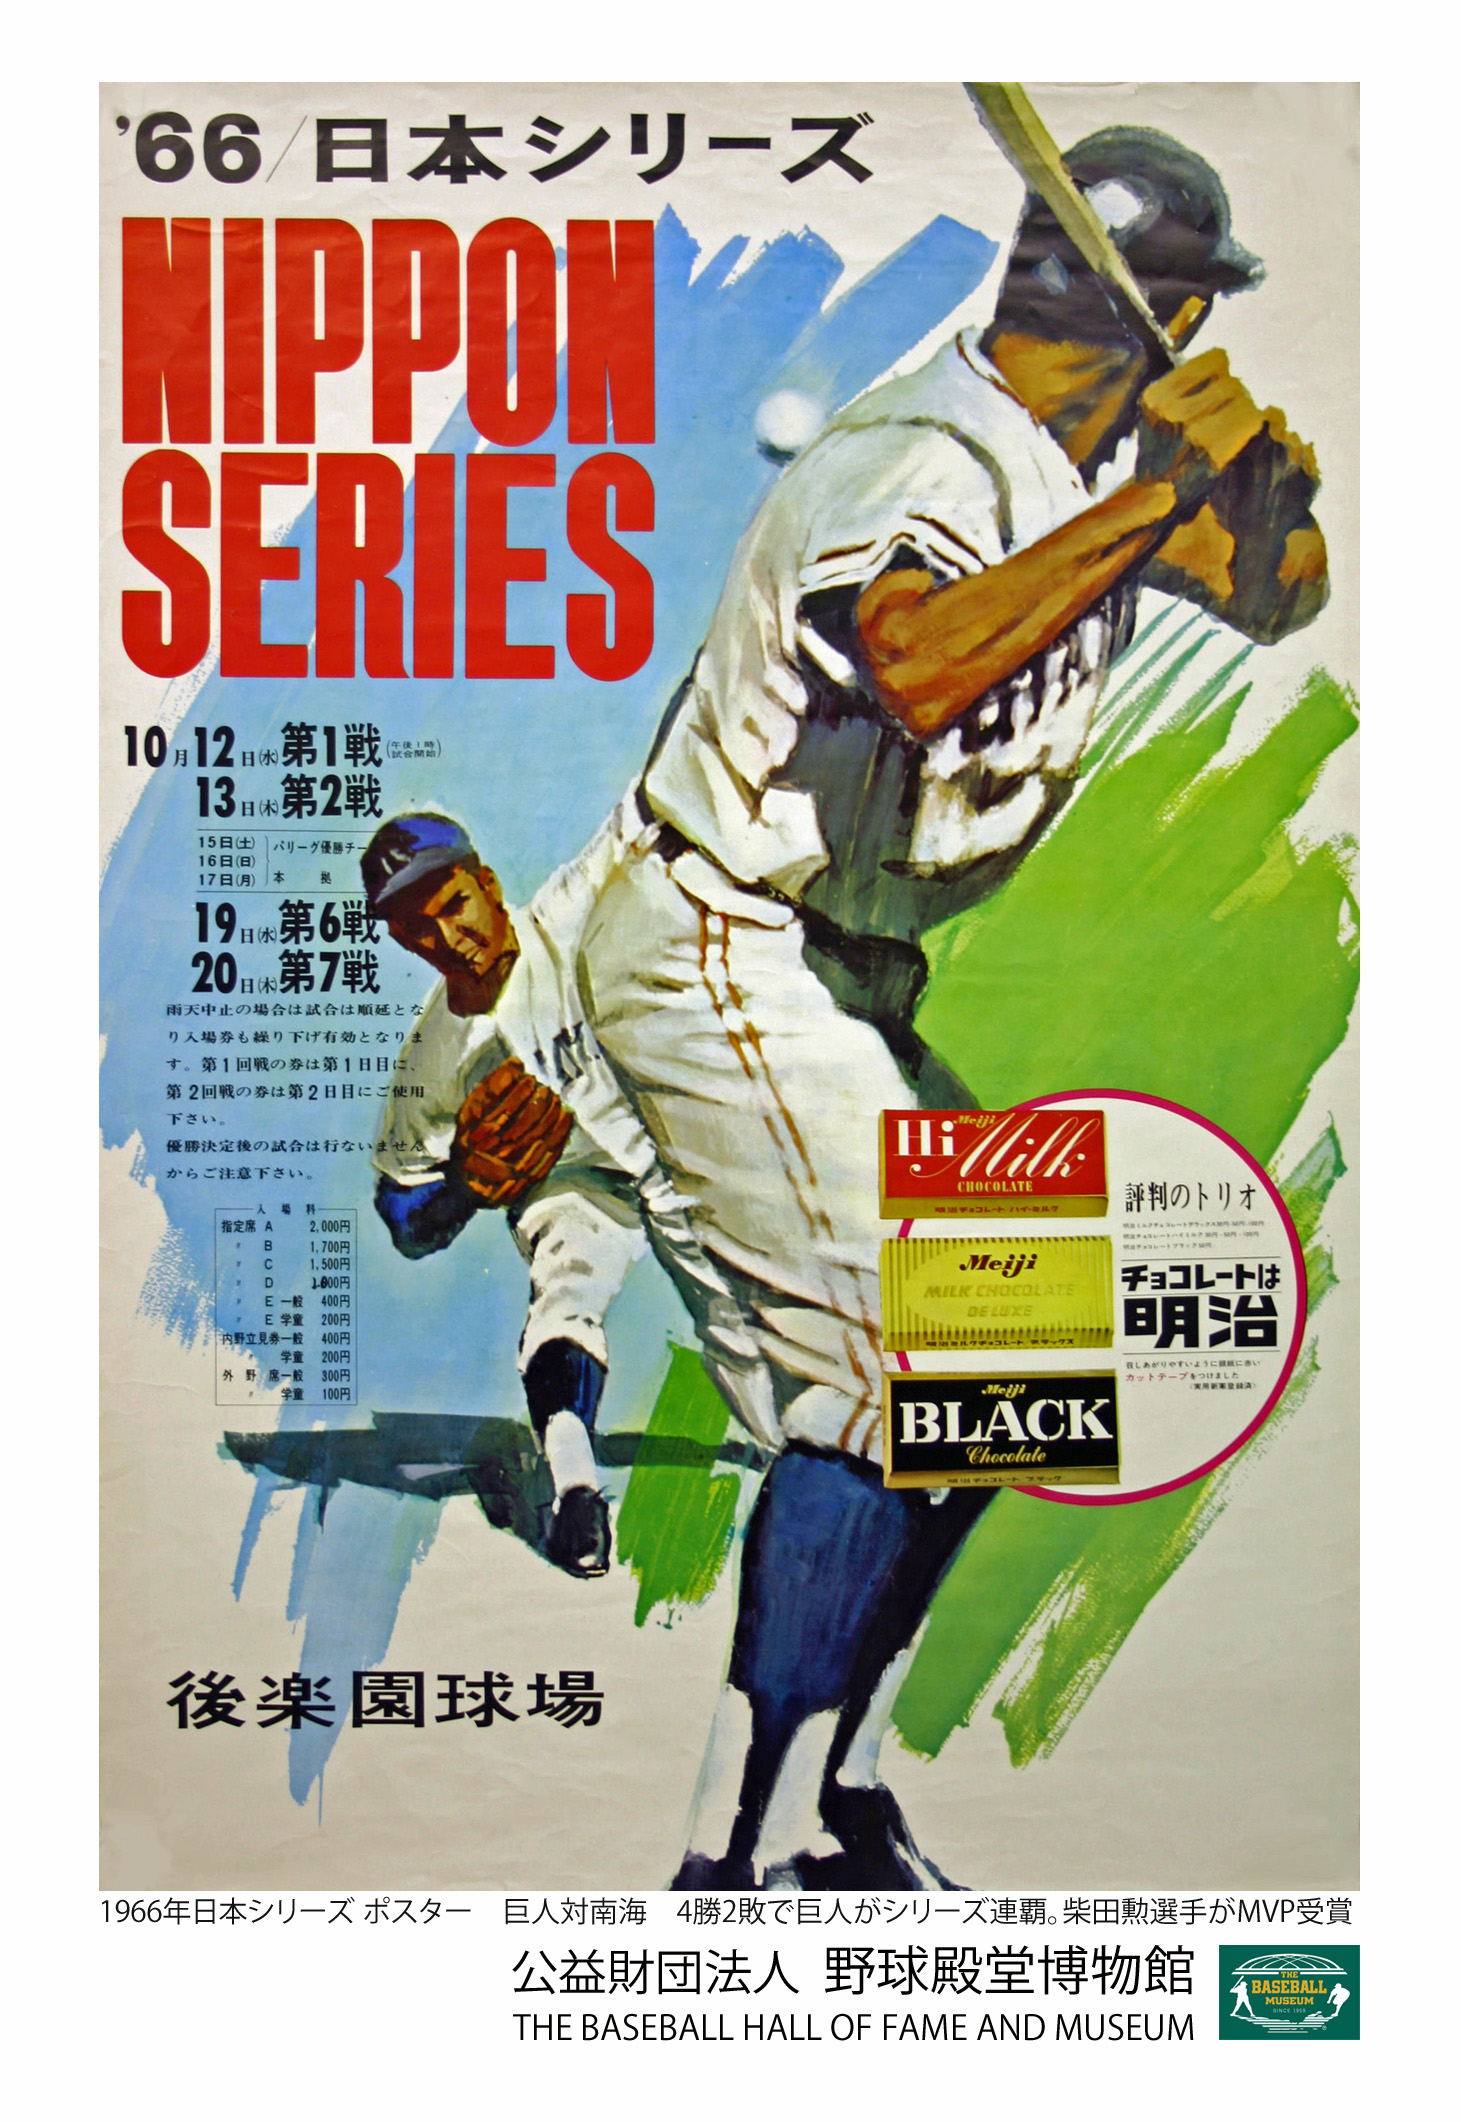 ポストカード 日本シリーズ - 野球殿堂博物館